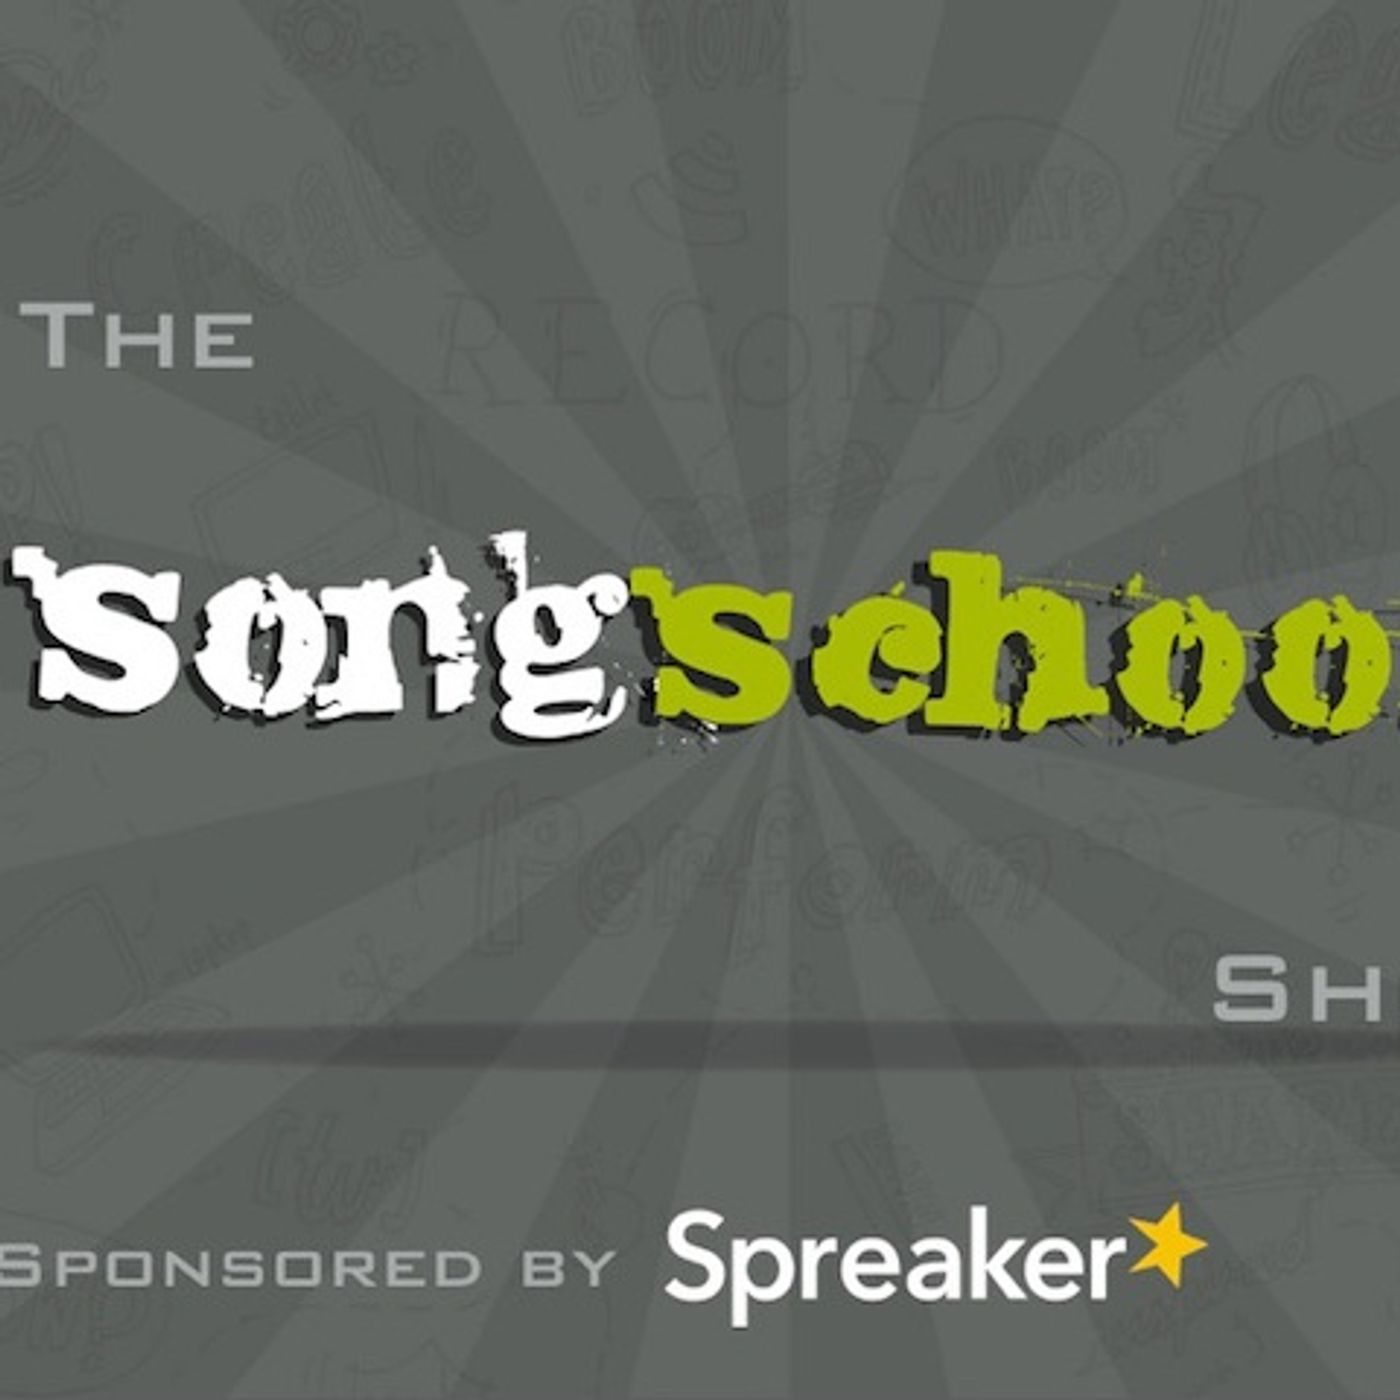 The Songschool Show @ Coláiste Íosagáin 3